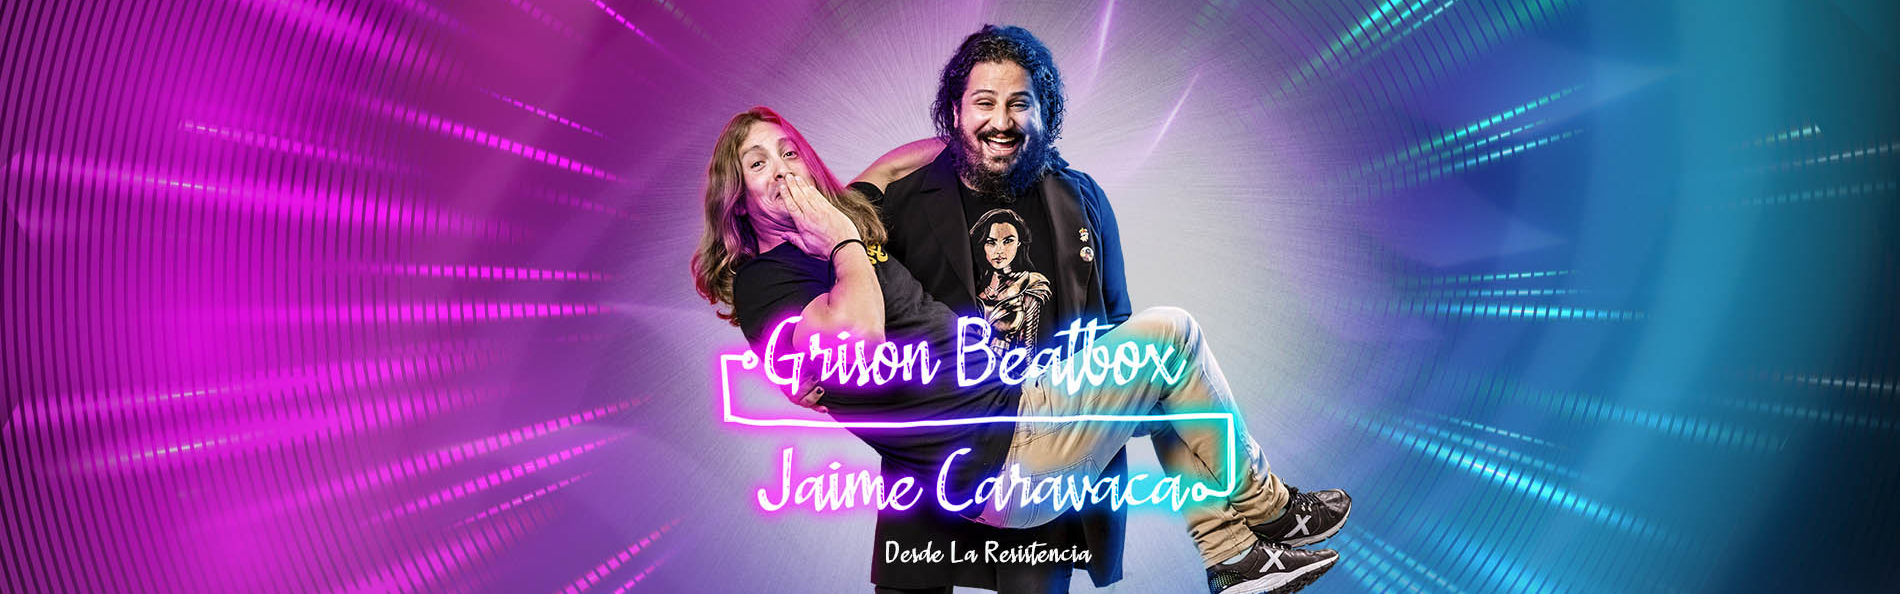 Grison Beatbox y Jaime Caravaca 1